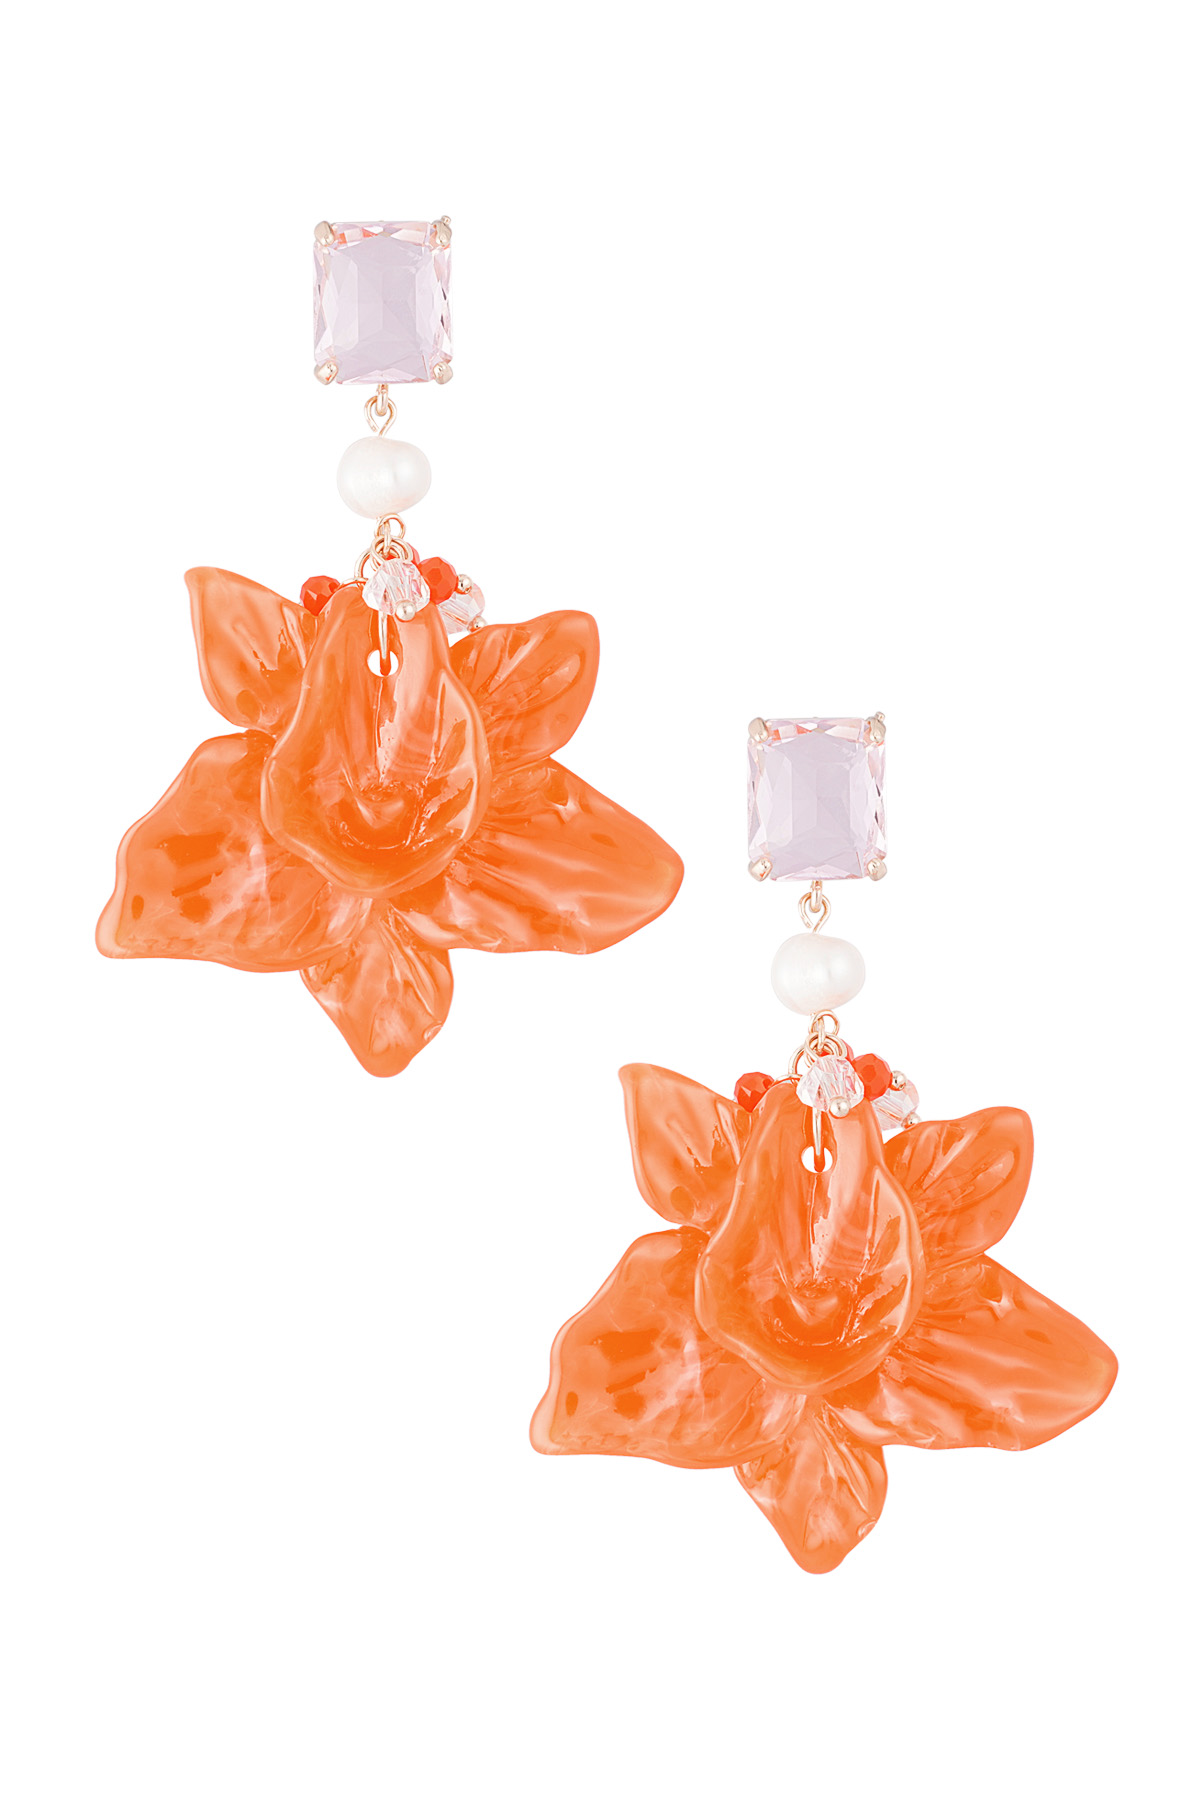 Floral pearl party earrings - orange/pink 